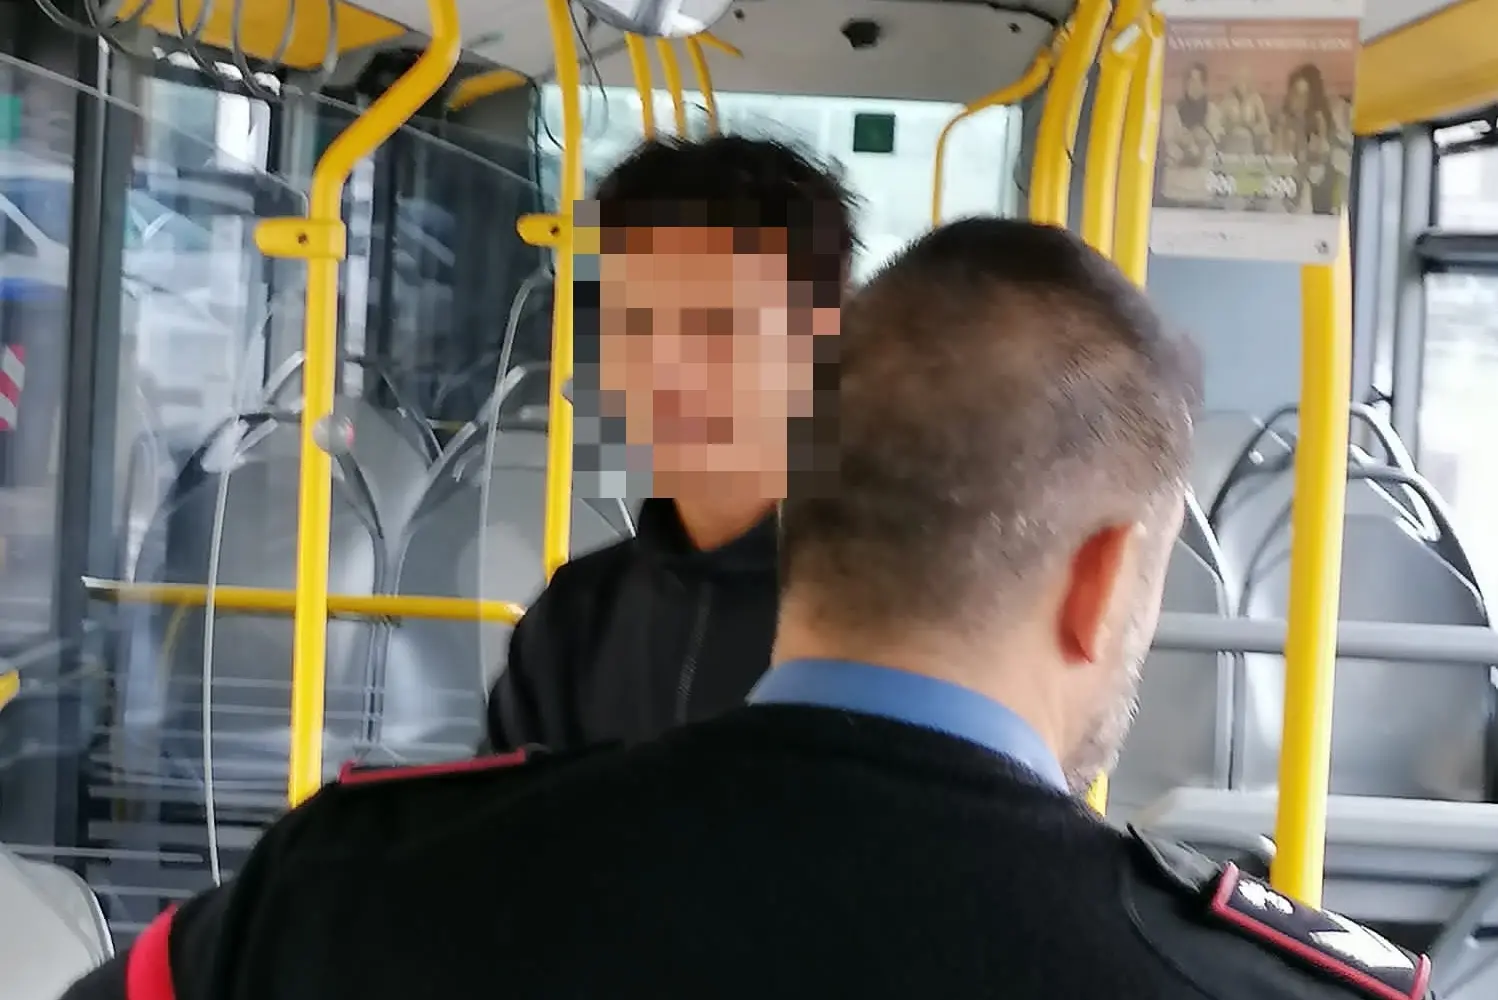 Il giovane fermato a bordo del bus (L'Unione Sarda)